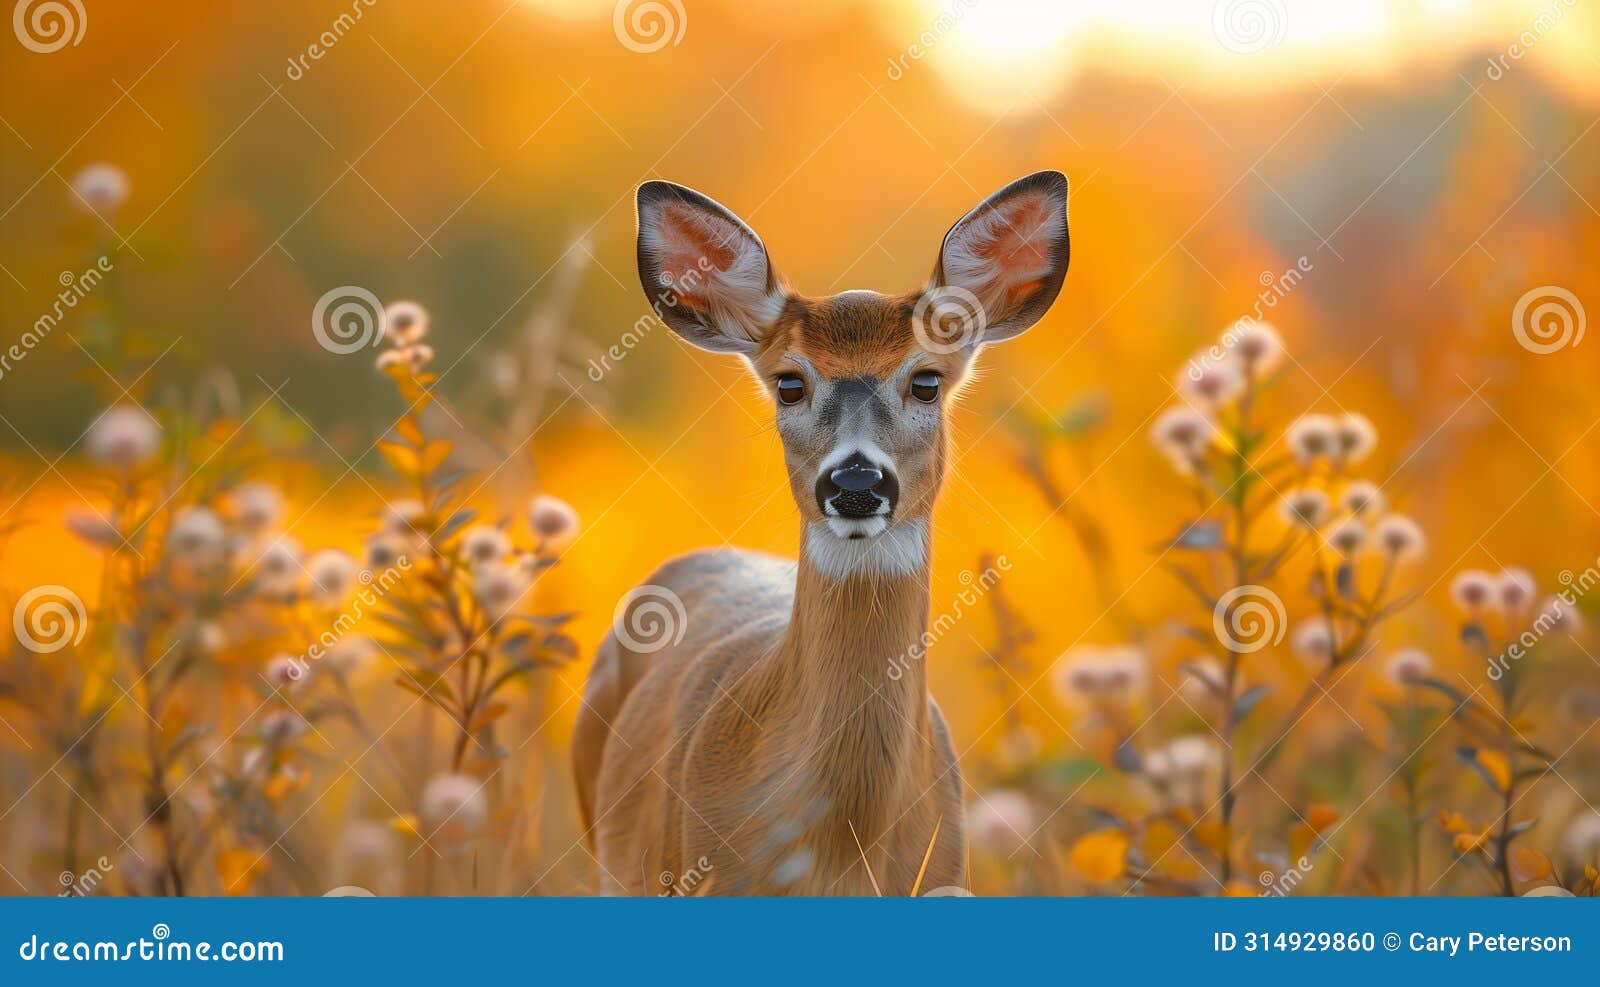 golden hour: a delicate portrait of a deer in wisconsin's meadow